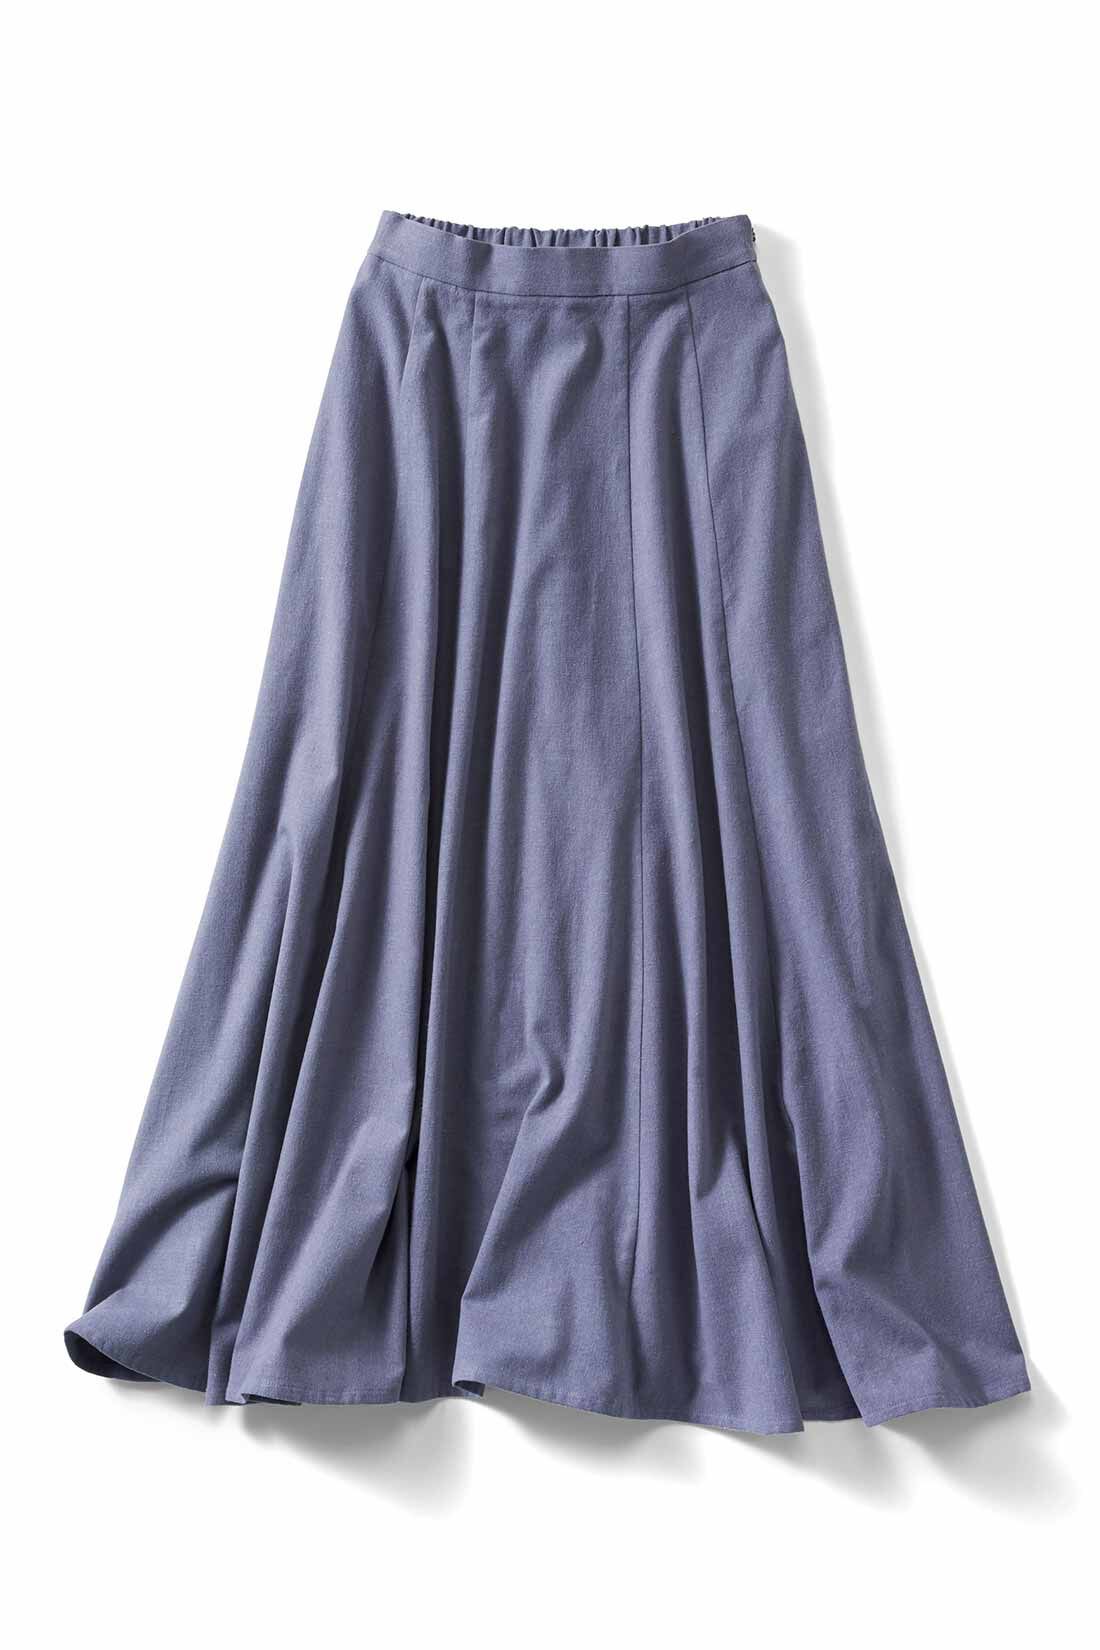 IEDIT|IEDIT[イディット]　アンティーク風起毛仕立てのコットンリネンマキシスカート〈ブルー〉|ブルー